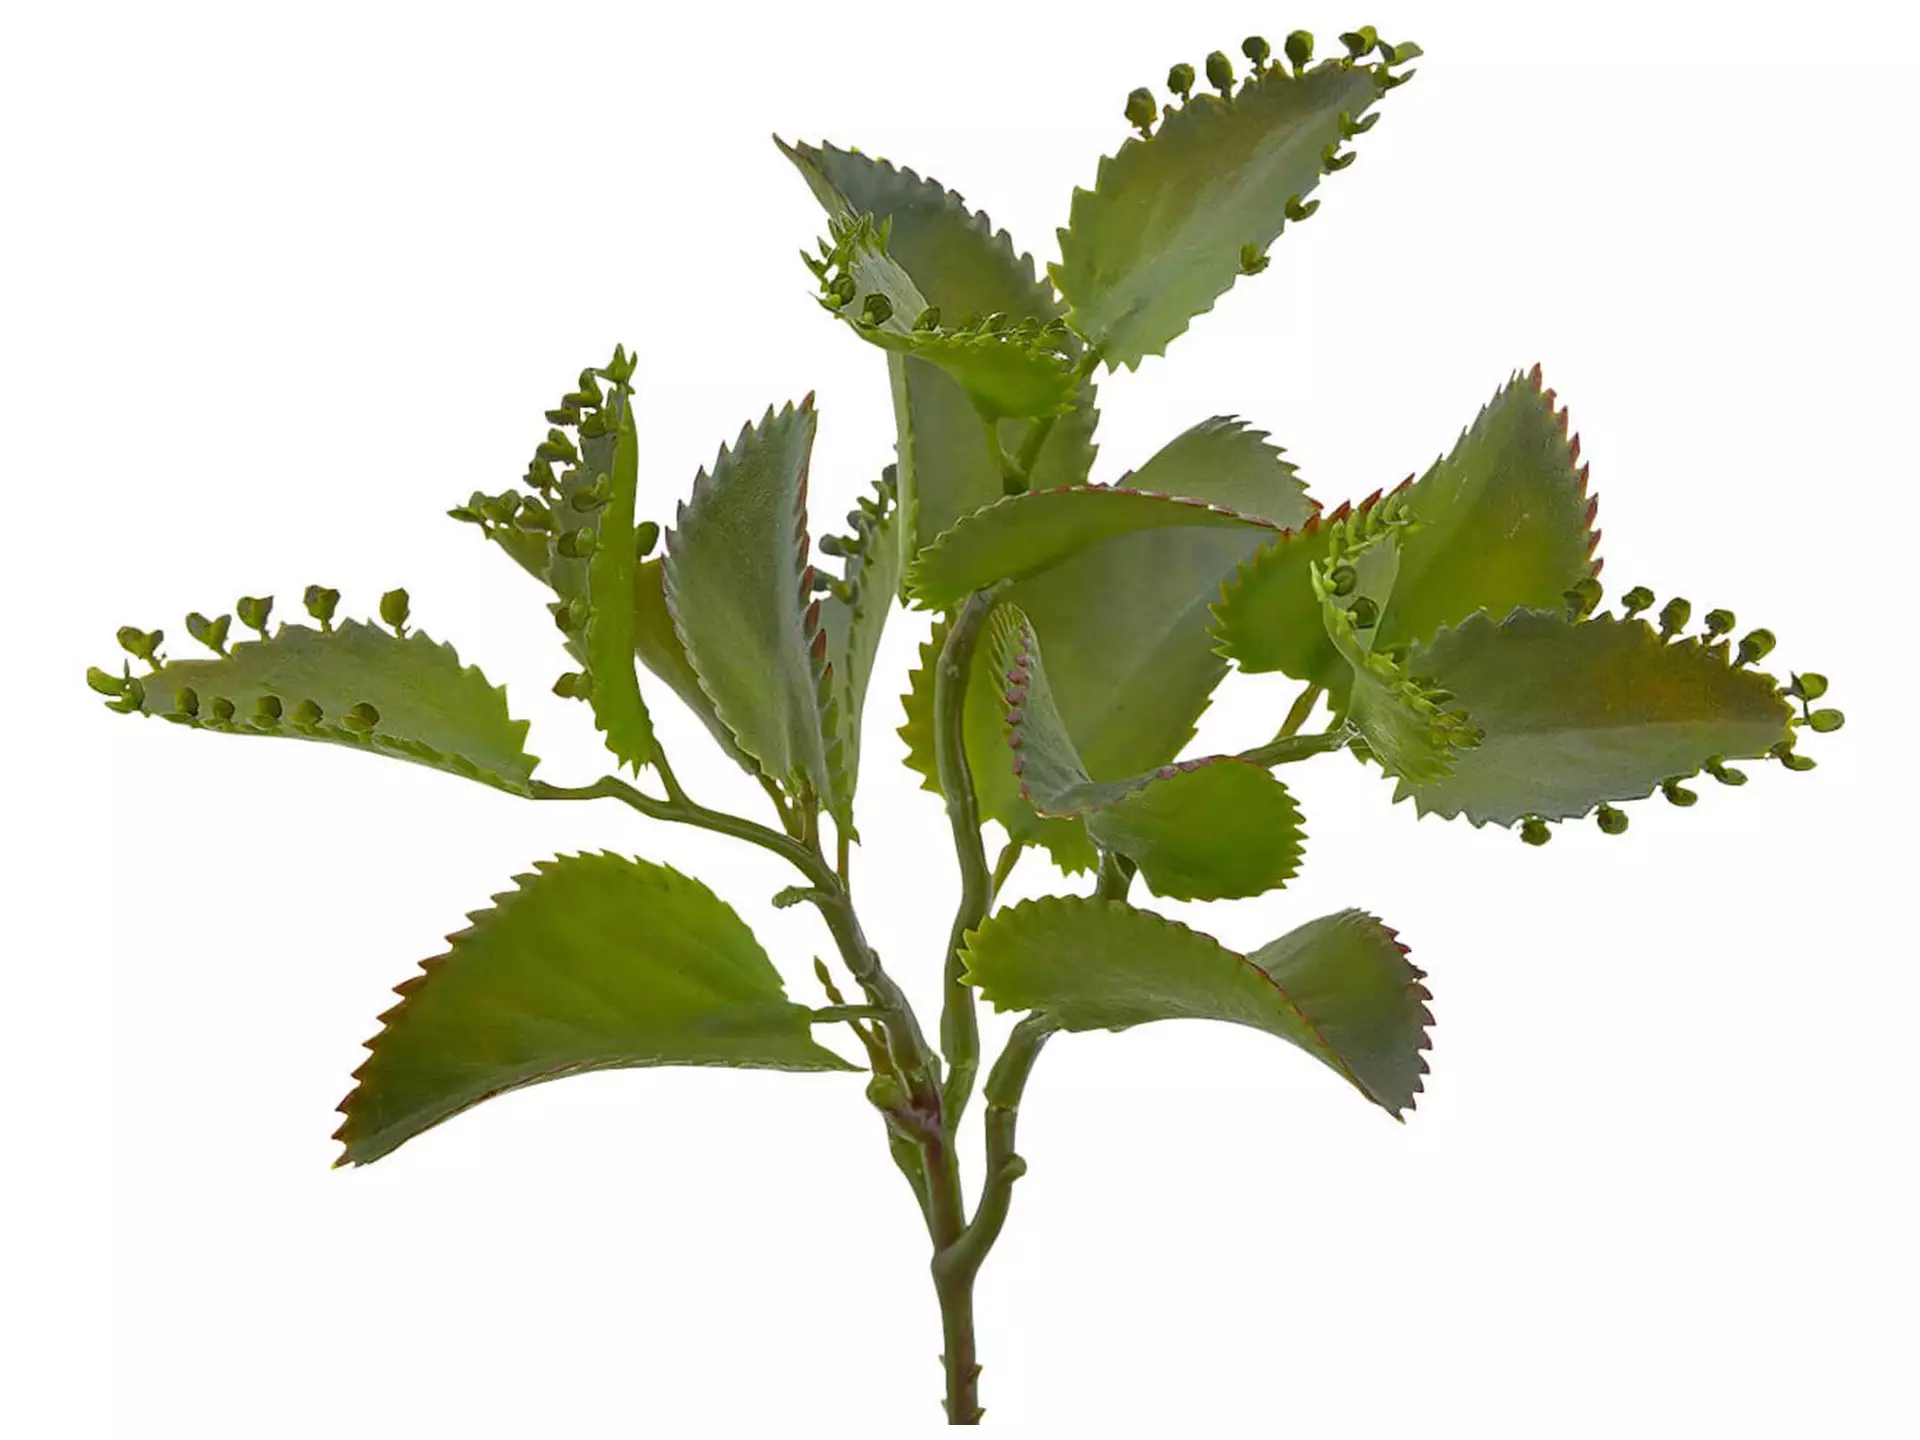 Kunstpflanze Kalanchoe Hellgrün h: 25 cm